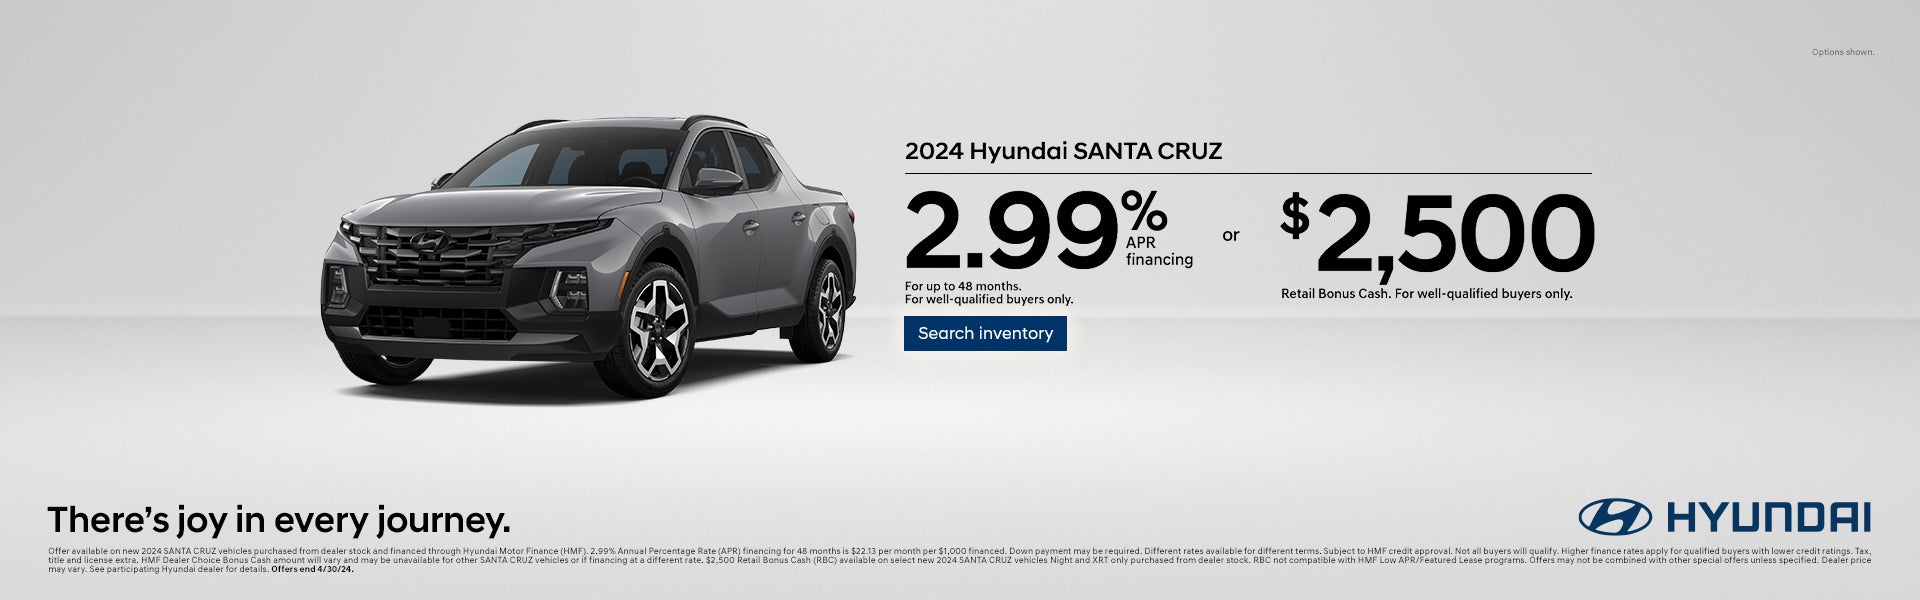 2024 Hyundai Santa Cruz offer